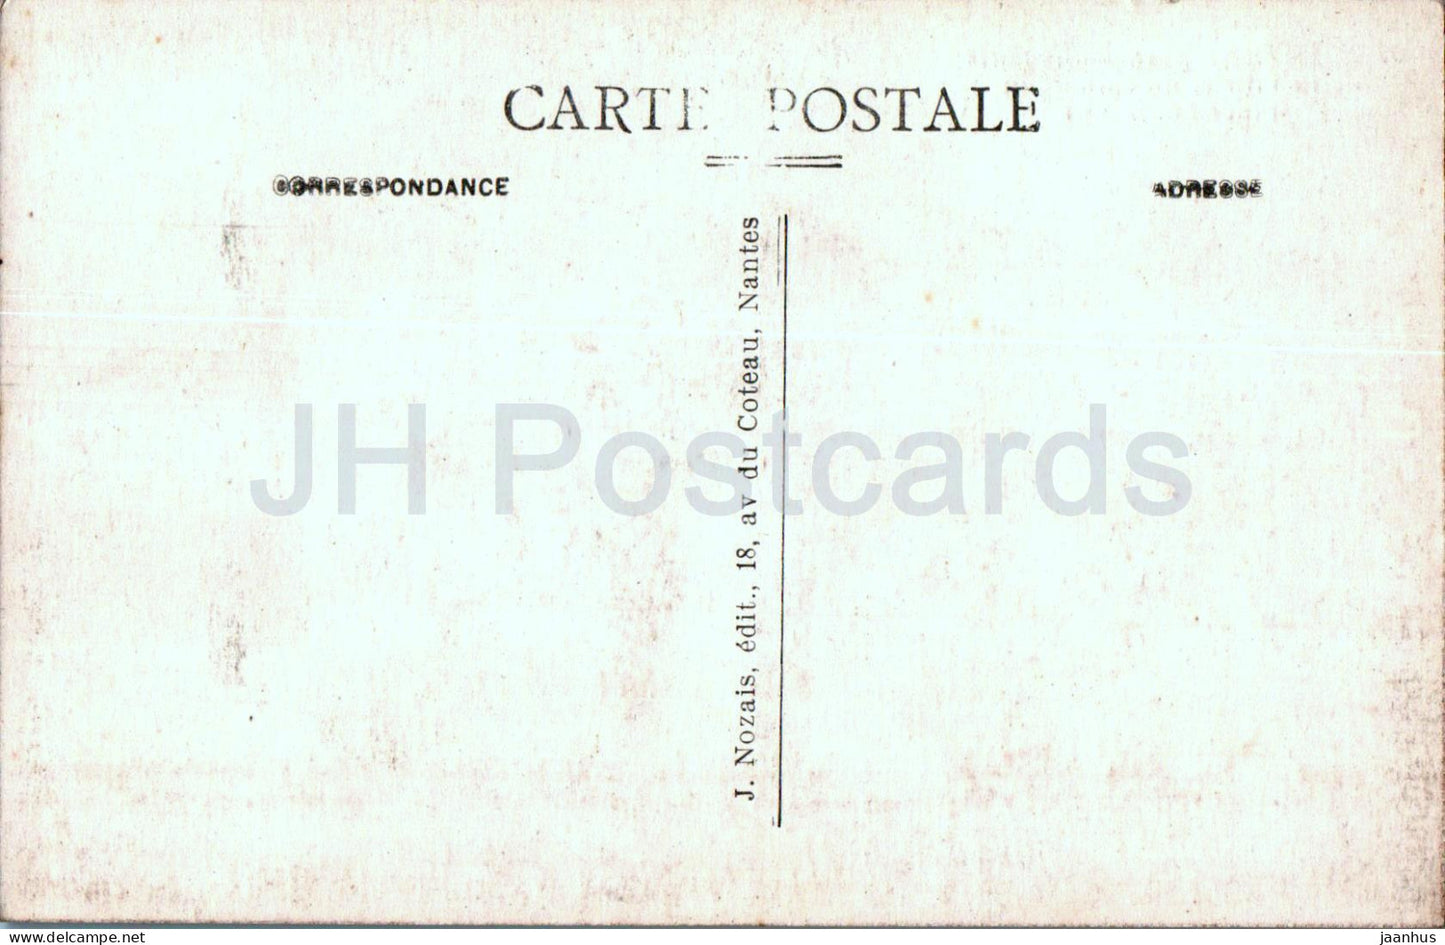 Nantes - L'Ancienne porte de la Ville et uncoin de la Place Louis XVI - 57 - alte Postkarte - Frankreich - unbenutzt 